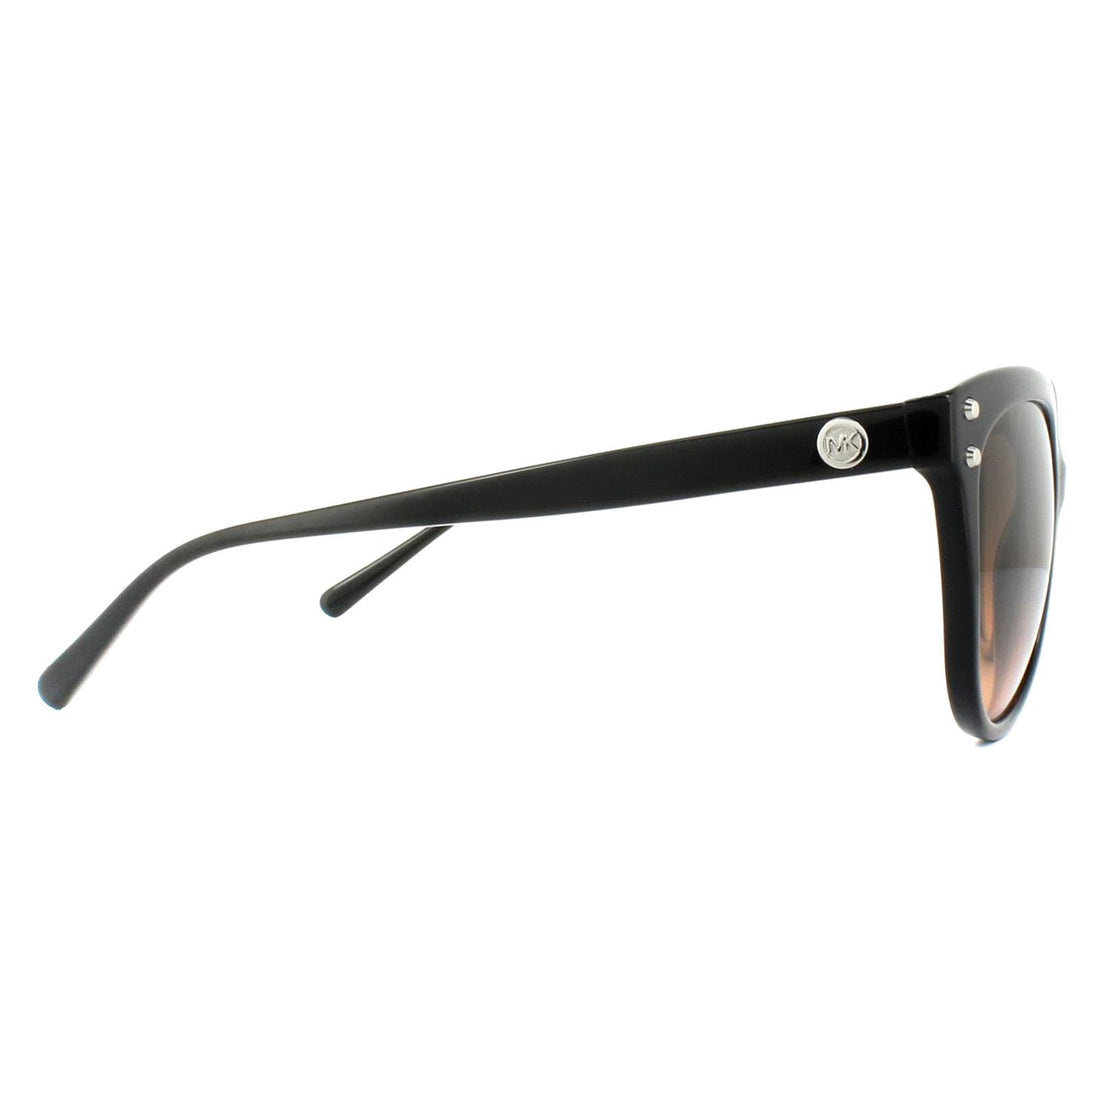 Michael Kors Sunglasses Jan 2045 3177/11 Black Grey Brown Gradient